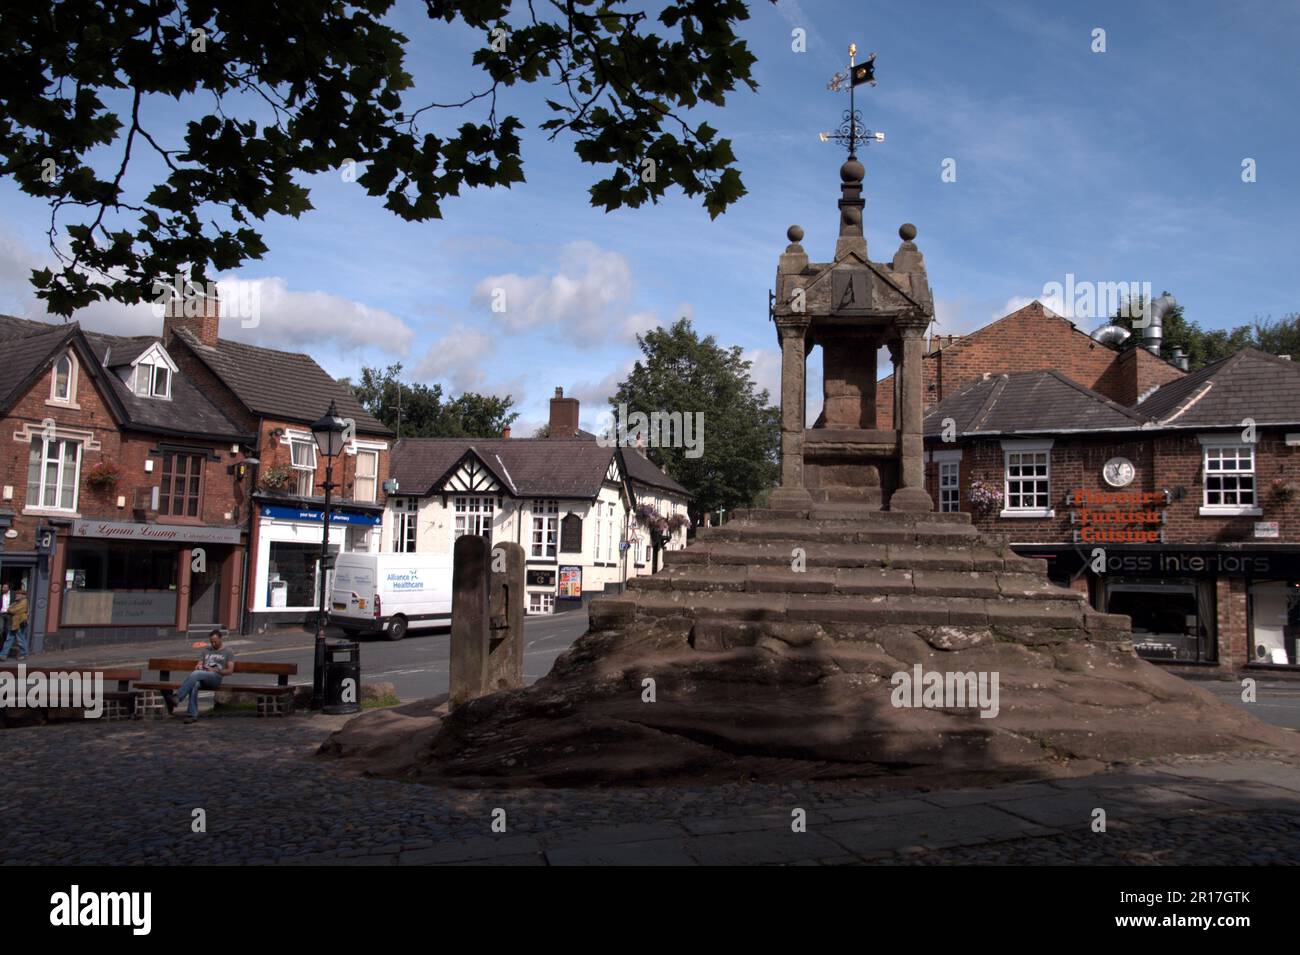 Inghilterra, Cheshire, Lymm: La croce del villaggio e stock. Foto Stock